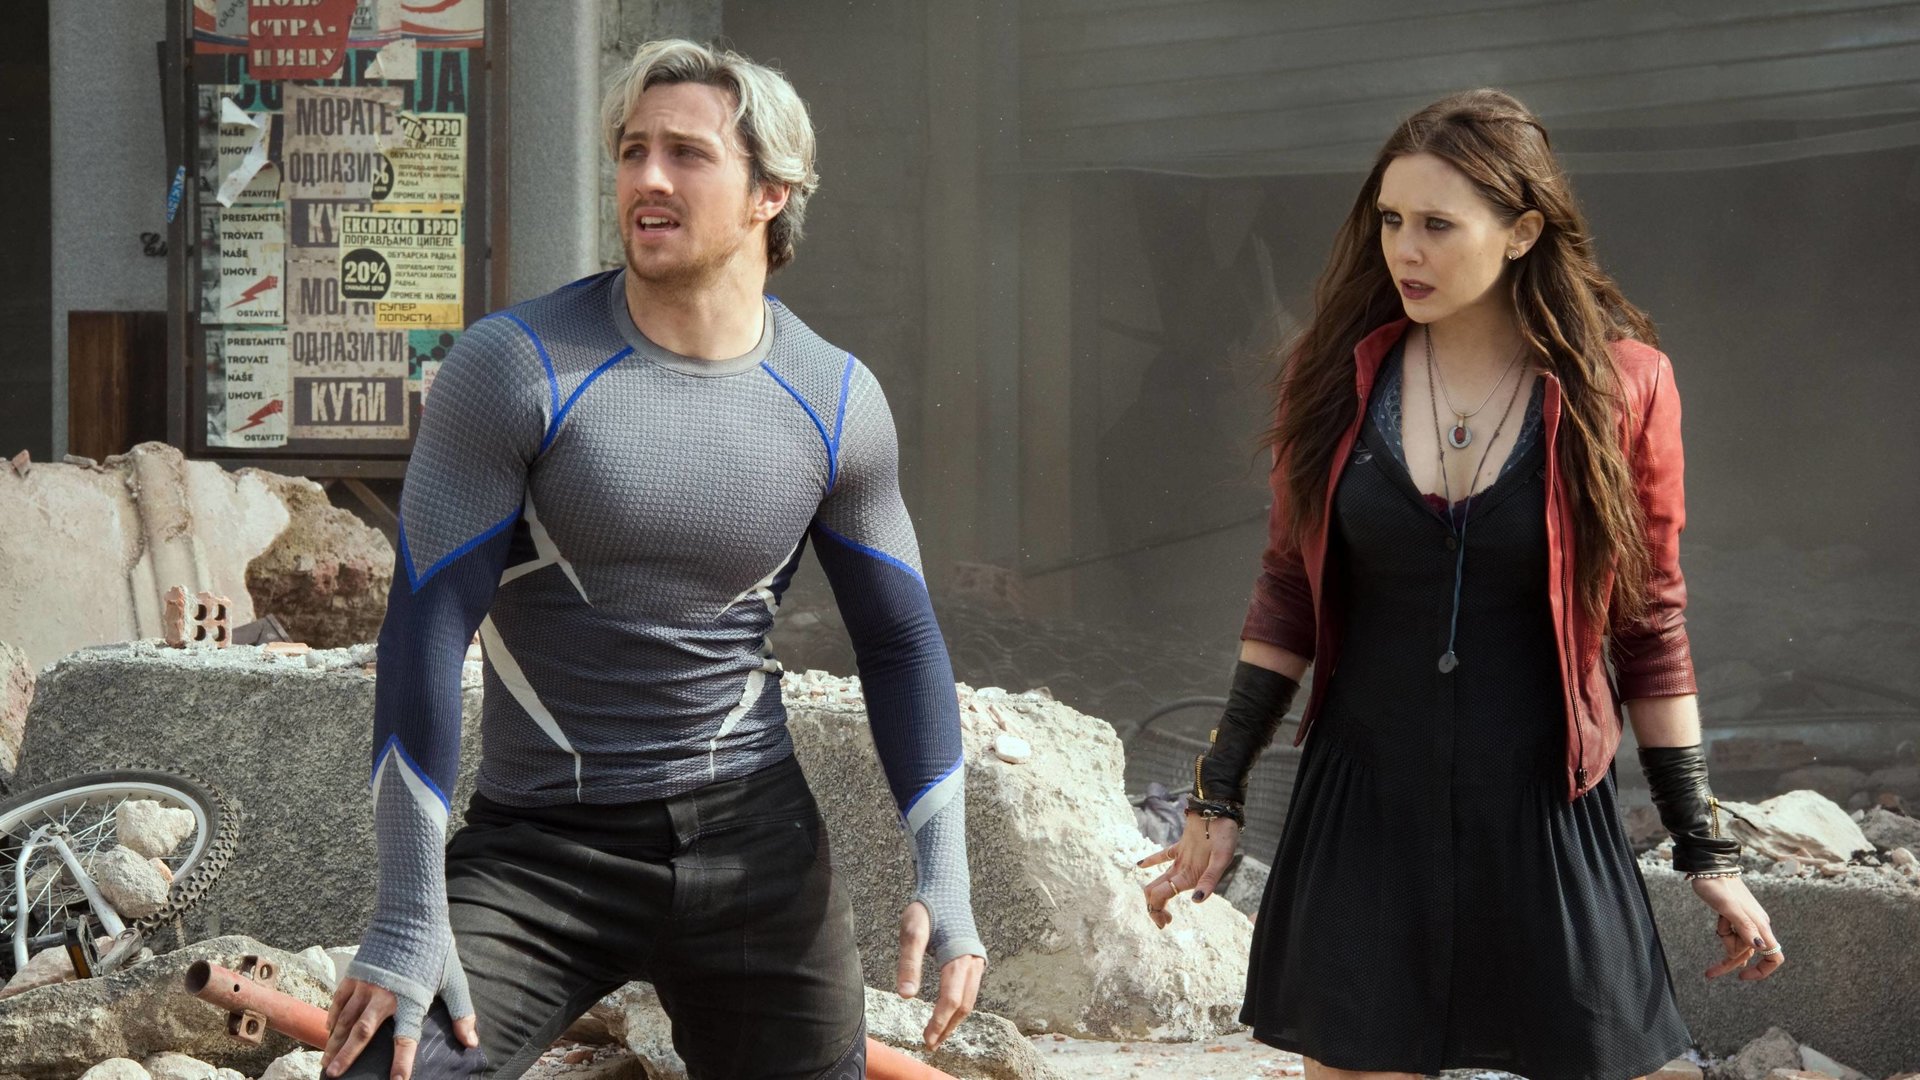 #„Avengers“-Rolle war Marvel-Star Aaron Taylor-Johnson „scheißegal“ – und das aus gutem Grund